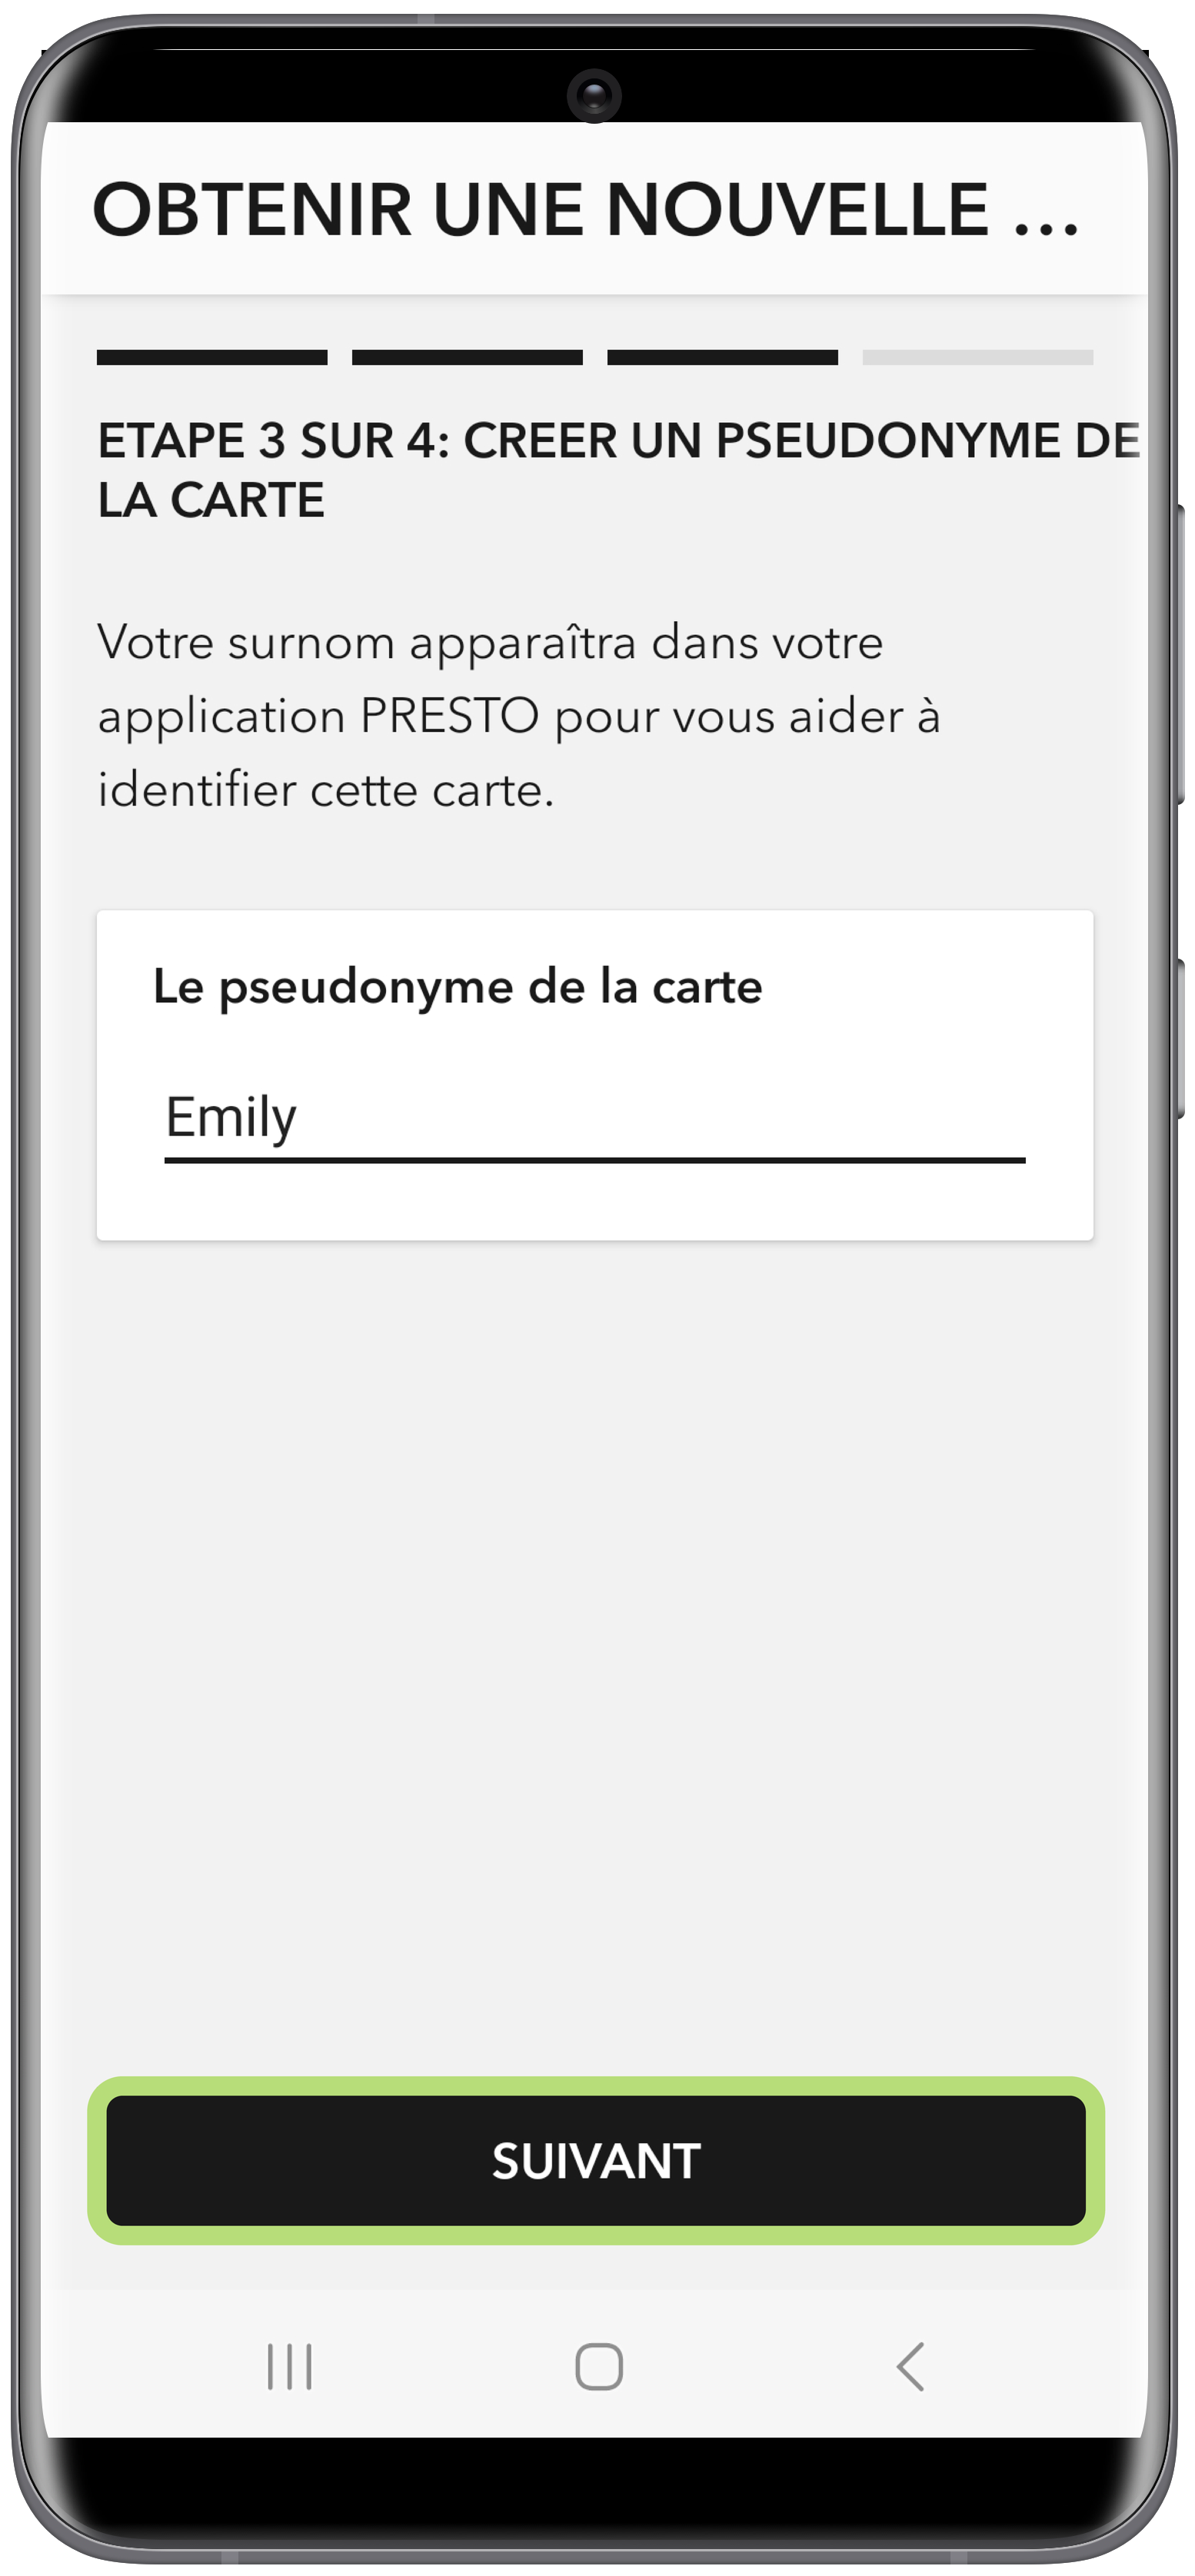 Obtenir une nouvelle carte PRESTO dans Google Wallet à l'aide de l'application PRESTO 4 étape capture d'écran